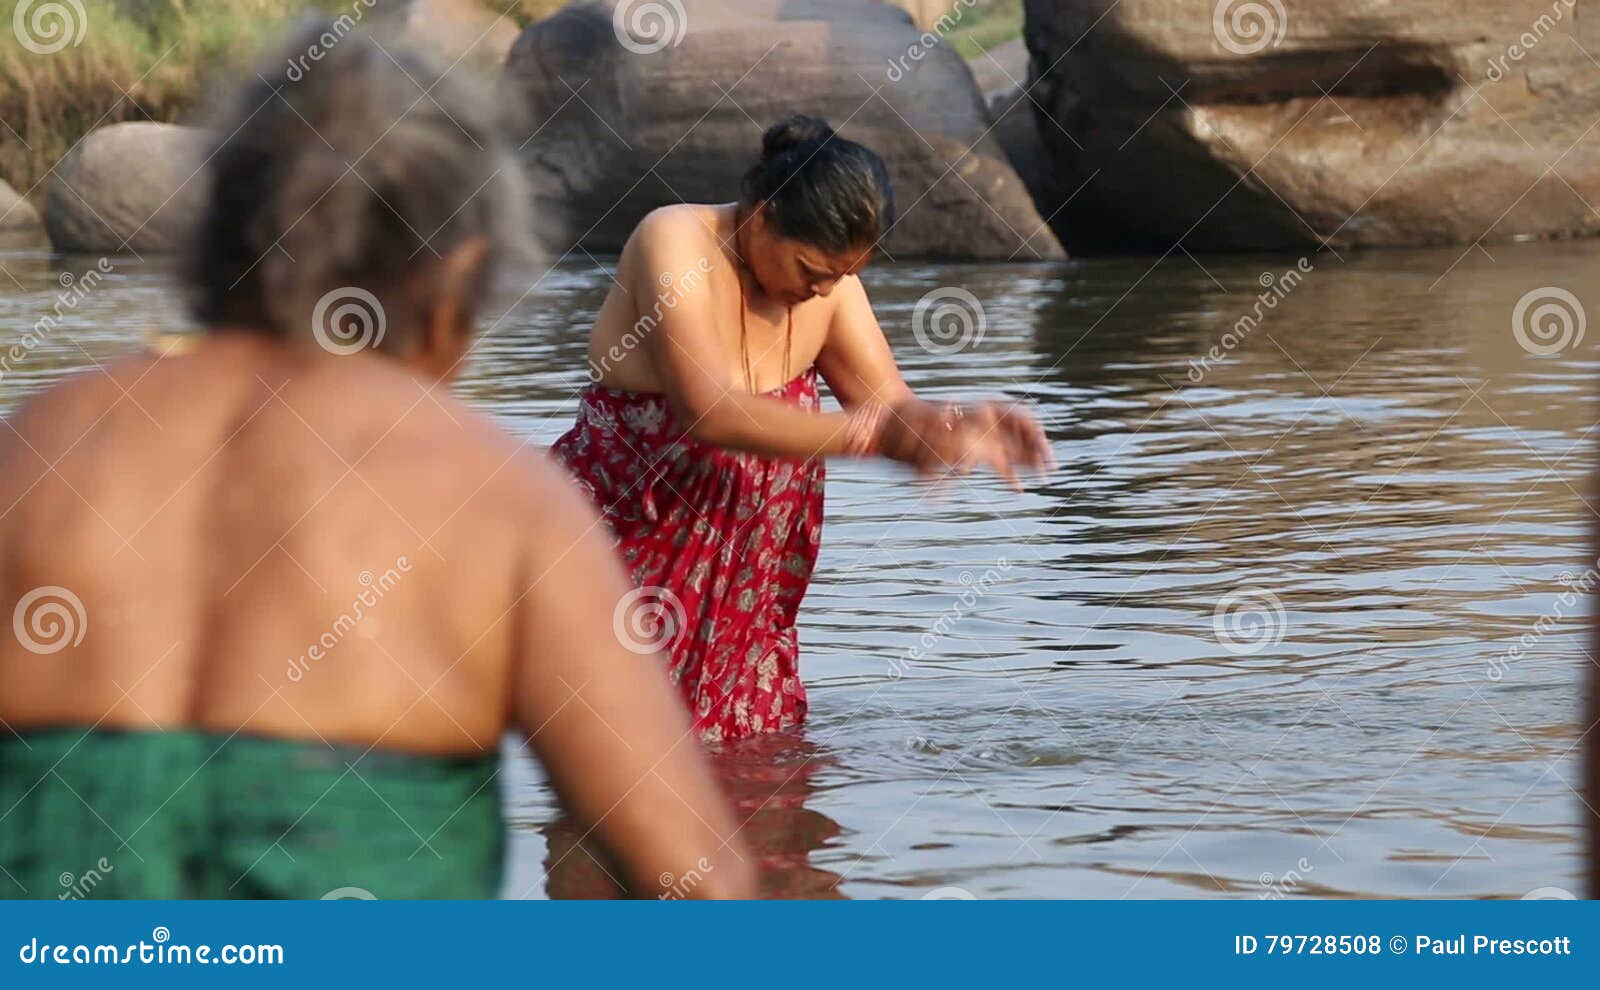 Indian ladies bathing videos